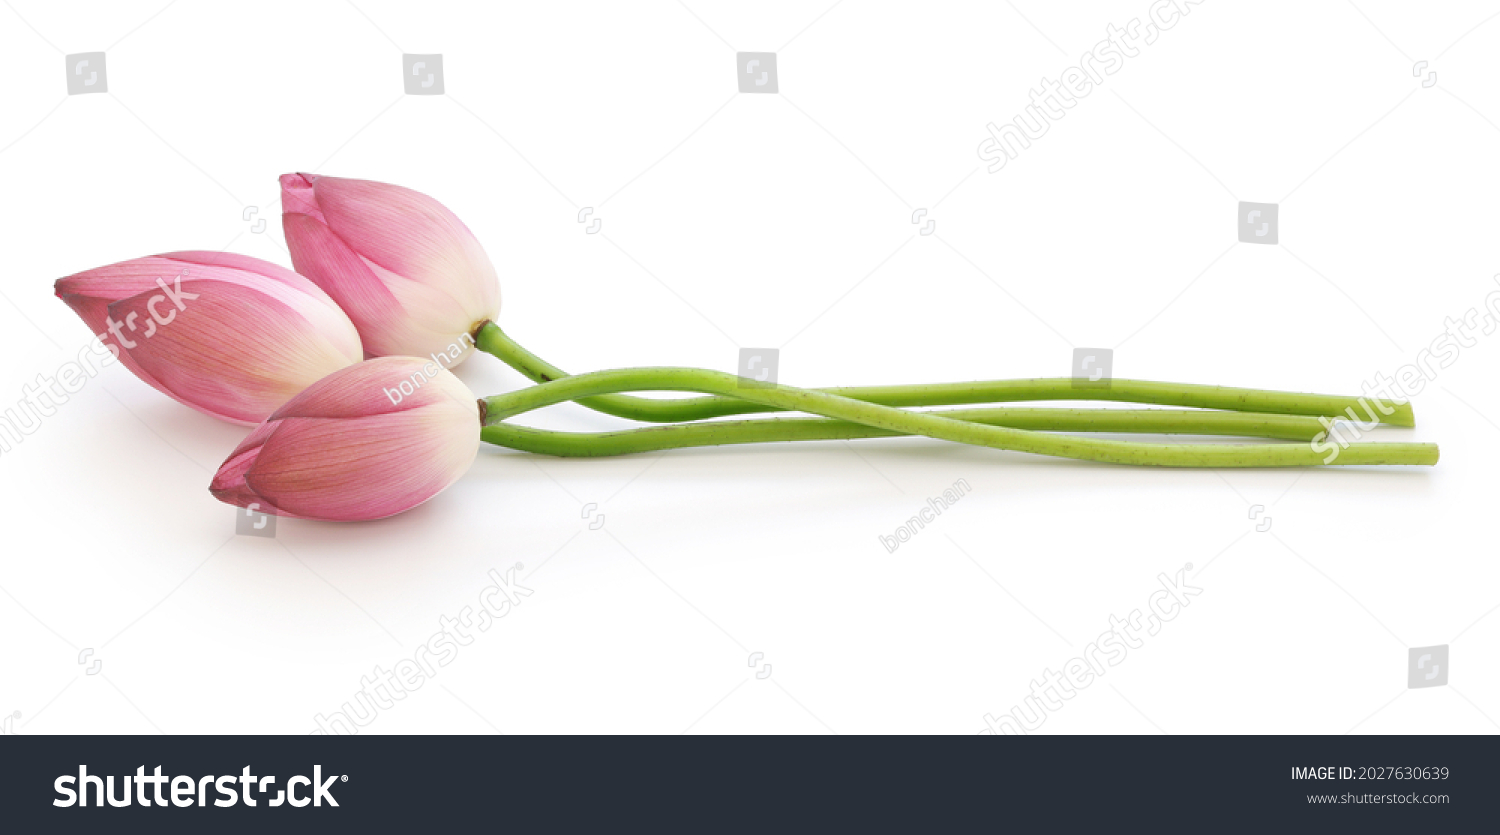 Lotus buds.
Lotus flower is Vietnamese national flower. #2027630639